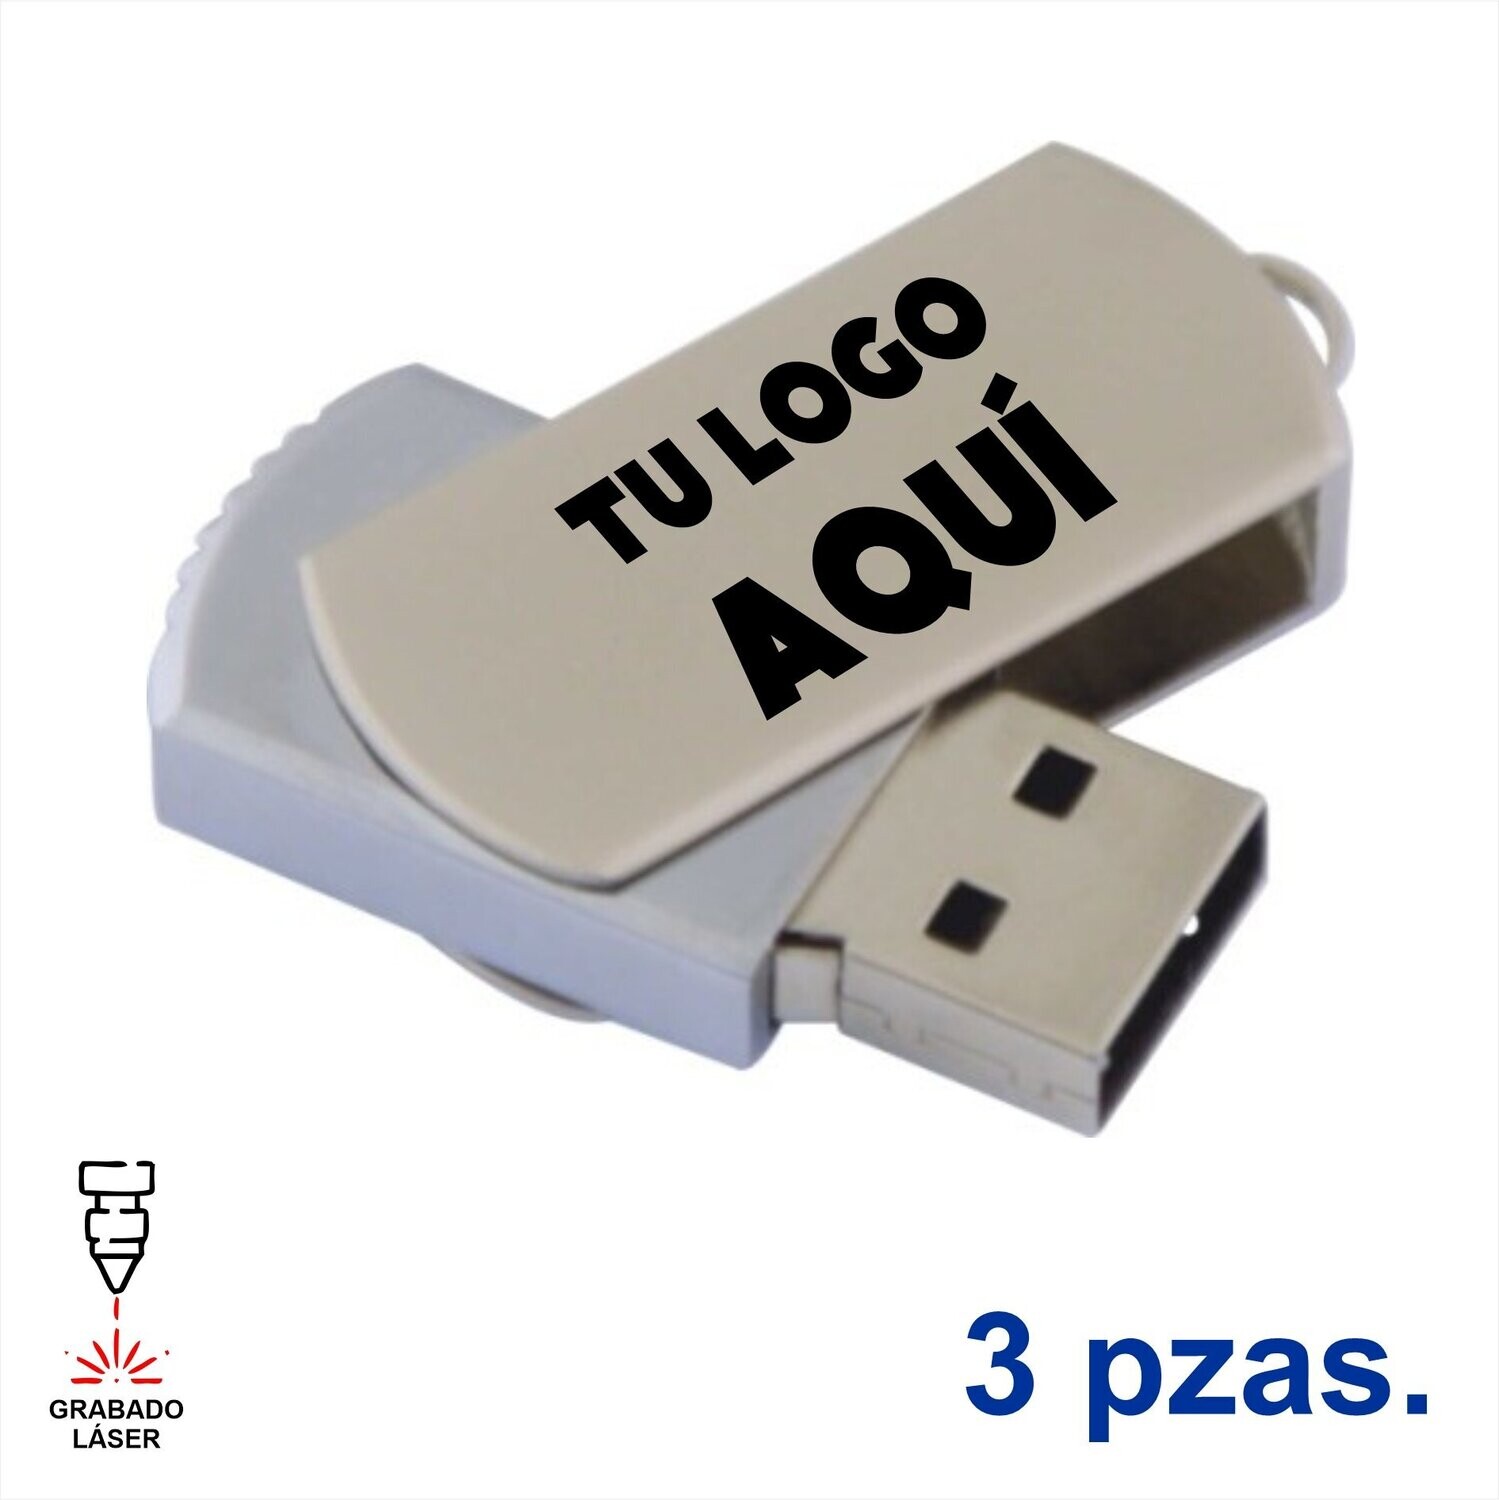 3 Memorias USB de metal con forma rectangular. Con tu logo grabado en láser.